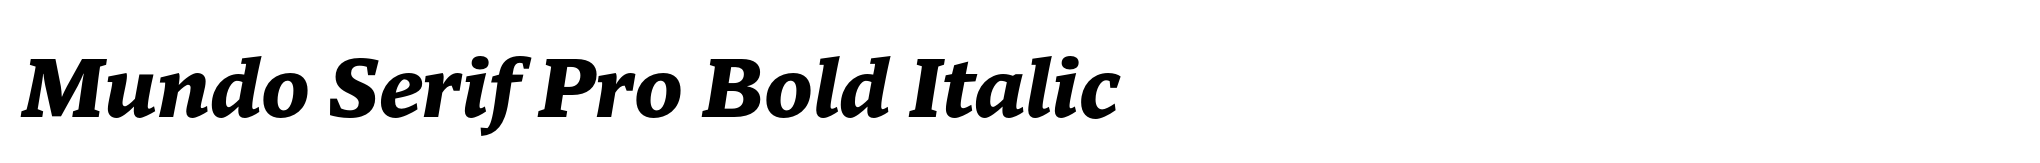 Mundo Serif Pro Bold Italic image